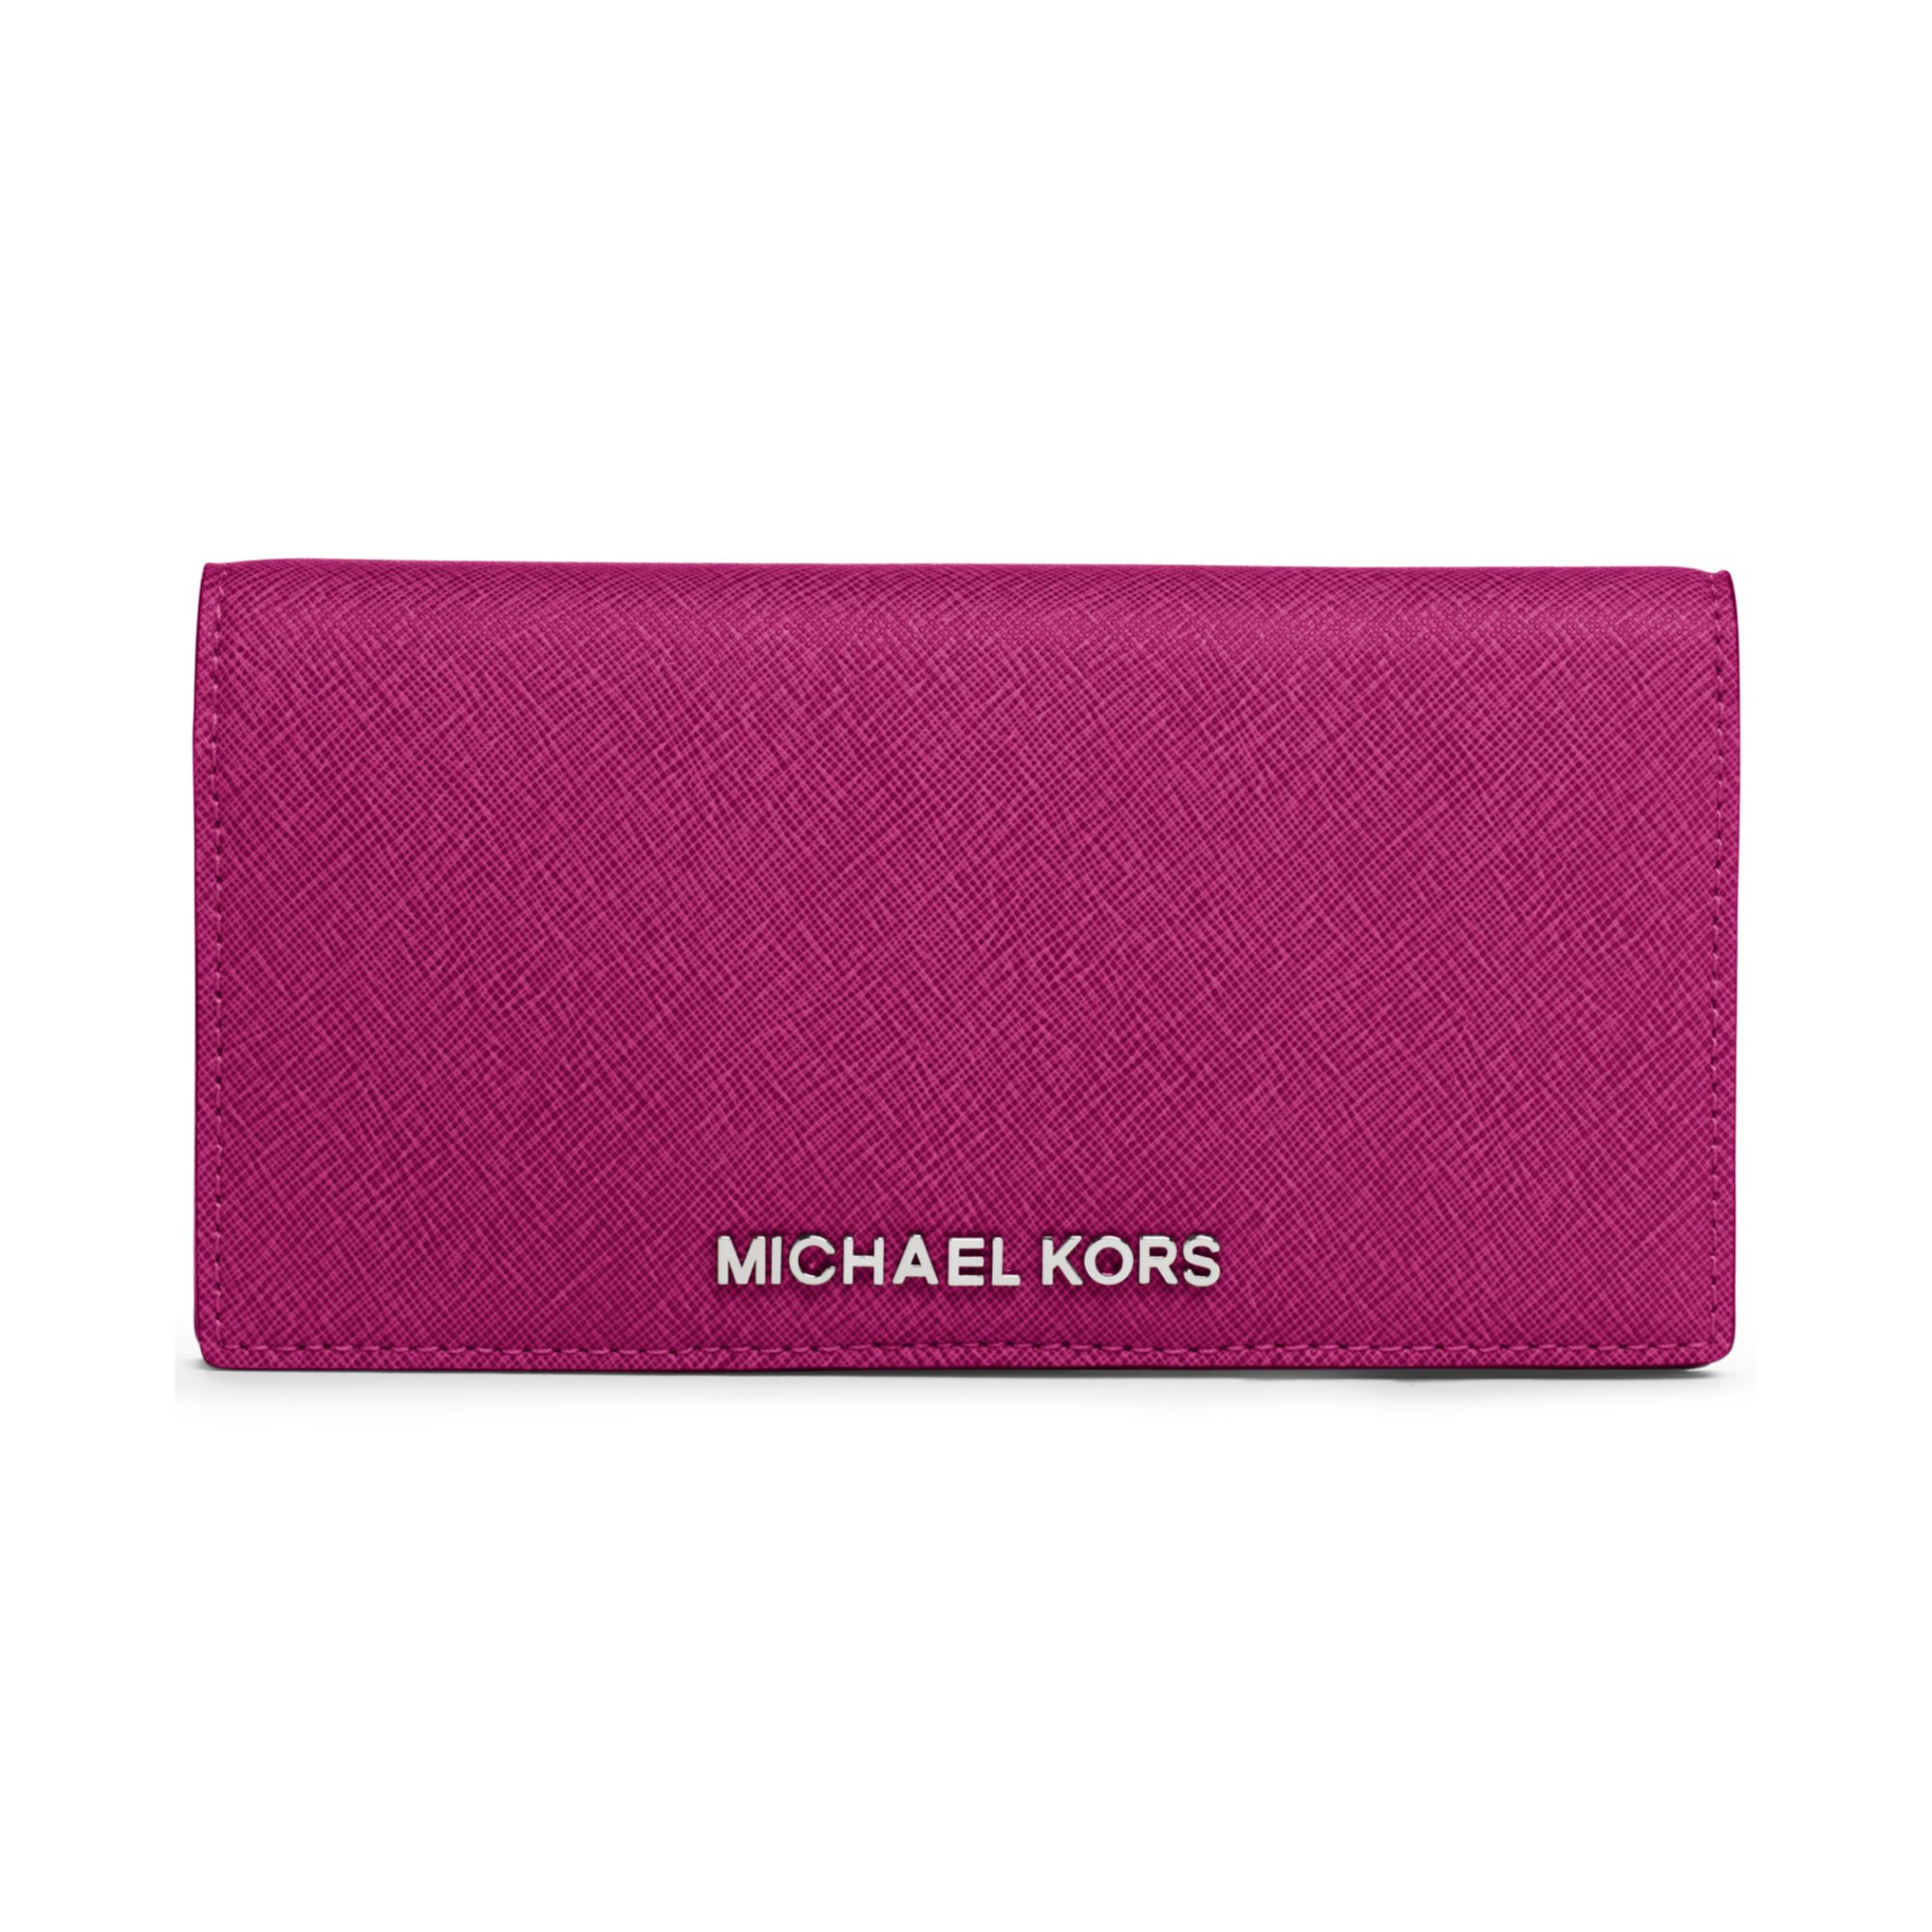 Lyst - Michael kors Wallet in Purple